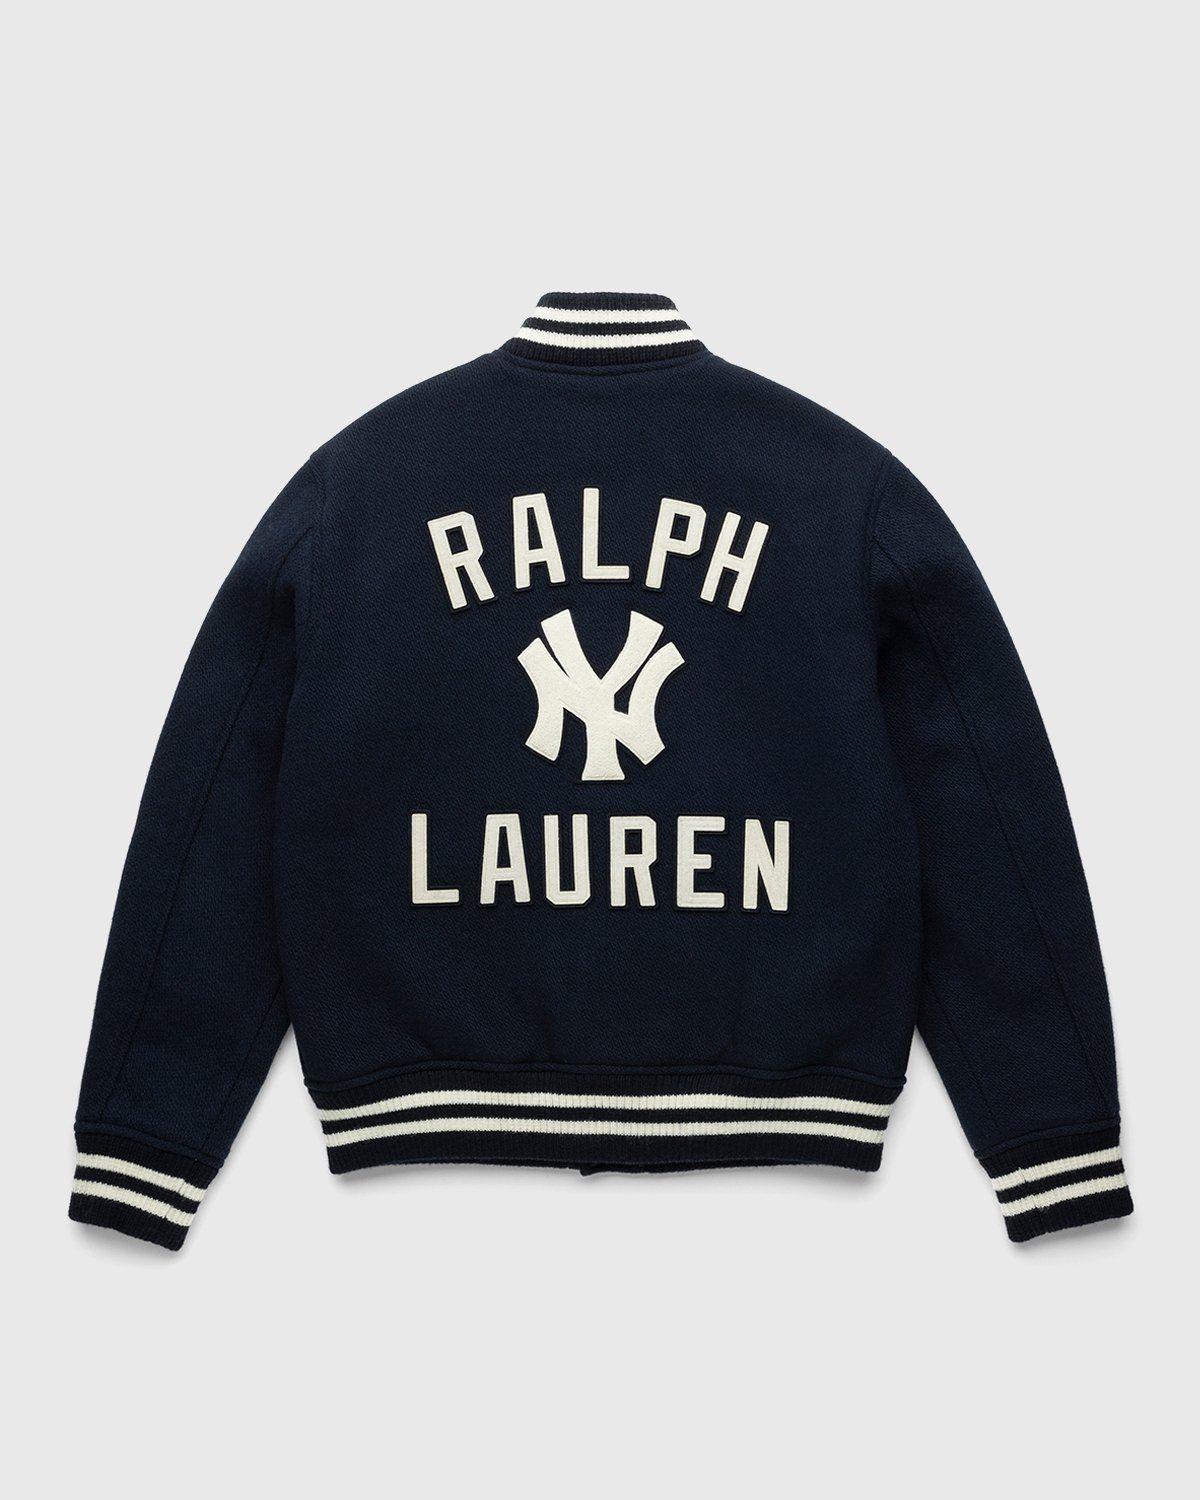 Actualizar 61+ imagen ralph lauren new york yankees jacket